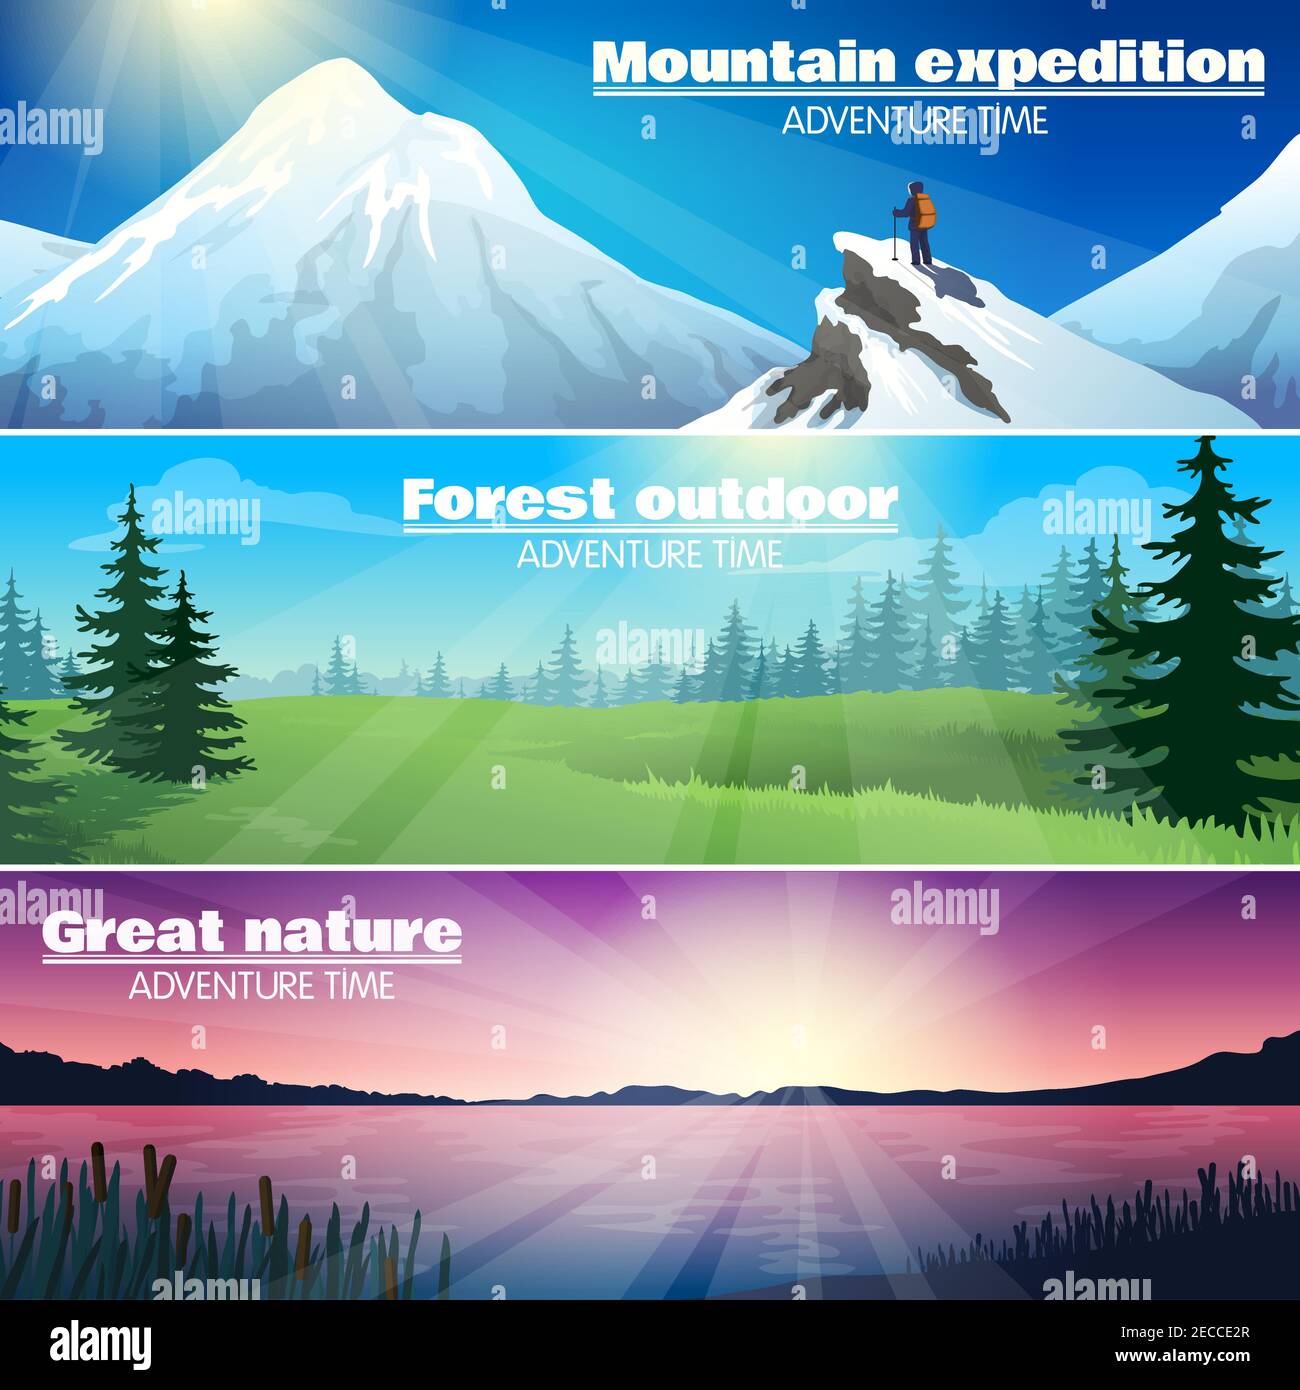 Camping Reisen Outdoor-Abenteuer 3 horizontale Banner mit Wald gesetzt Und verschneite Berge Landschaft abstrakte Illustration Vektor Stock Vektor